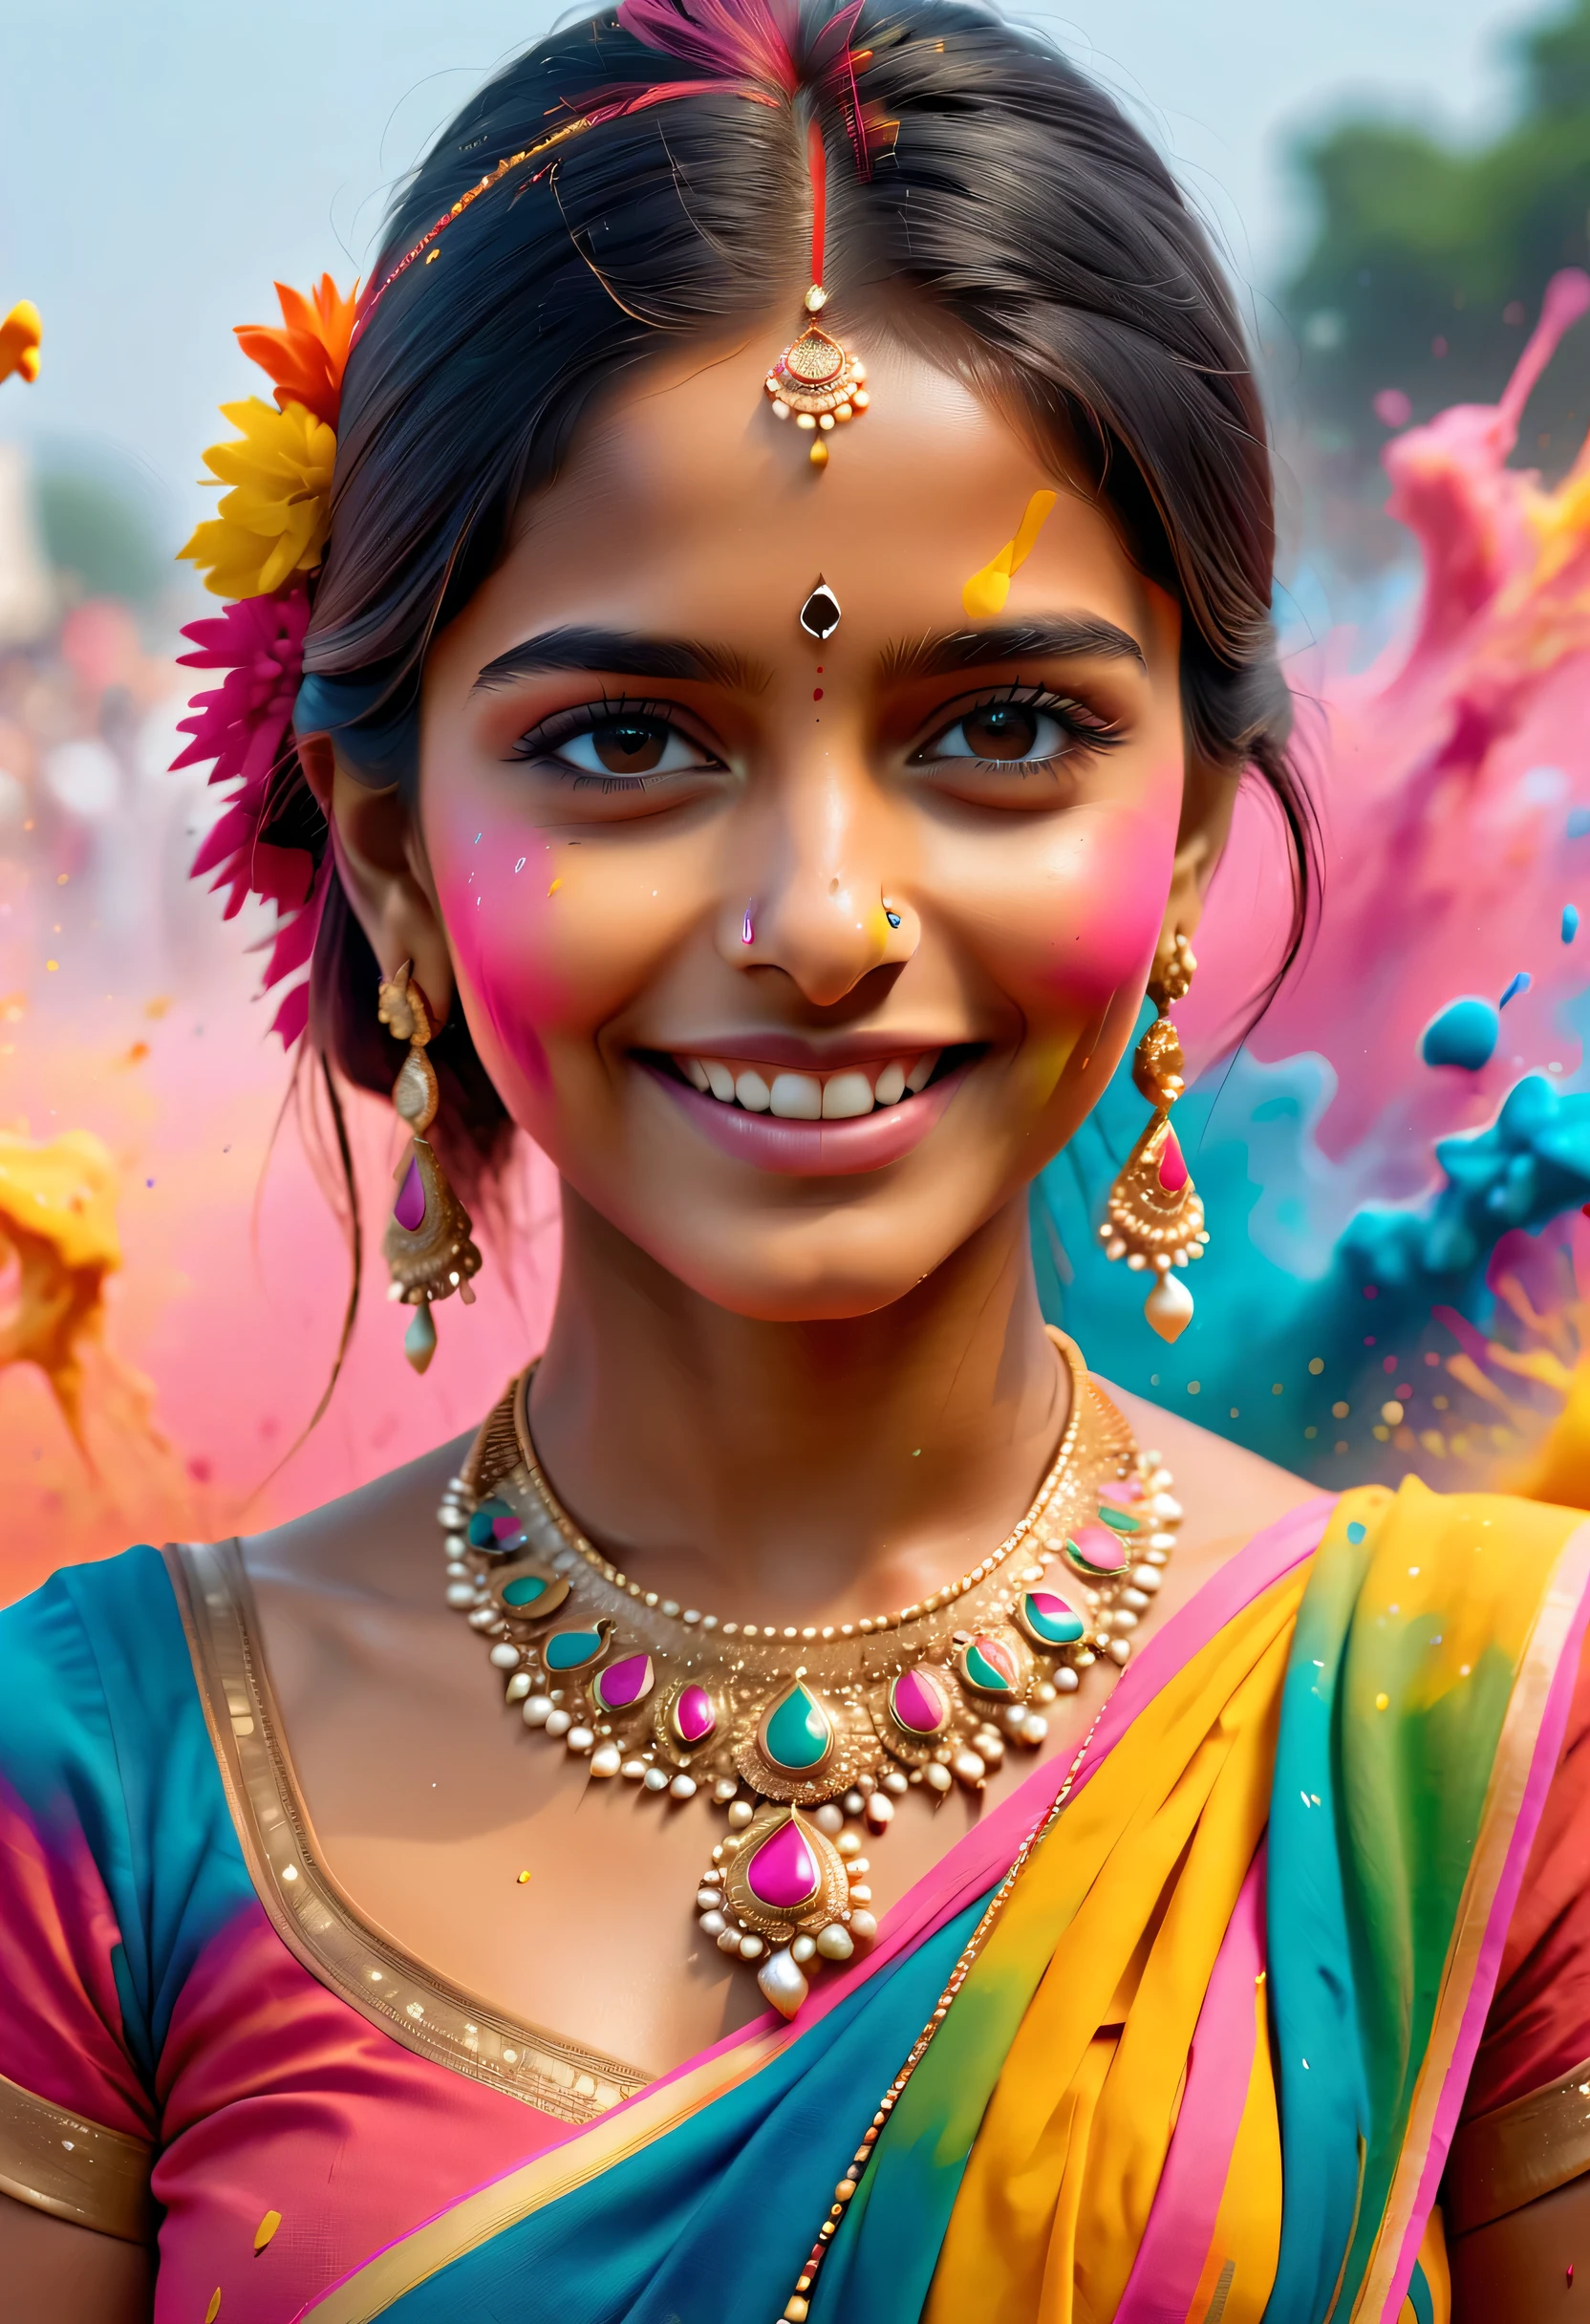 (最佳影像品質，4k,8K，高畫質，傑作:1.2)，超詳細，(逼真，逼真，逼真:1.37)。印度节日，绘画节，潑漆：1.37.美丽的印度女孩，Face painted with 豐富多彩的 paint，金色的眼睛，精美的黄金首饰，快樂的，幸福，富有感染力的微笑，色彩繽紛的服飾，彩色指甲，身上被潑漆，Splashing 豐富多彩的 paint at the event，油漆飛濺背景，彩色潑漆，充满活力的运动，動態而有力的抽象藝術，豐富多彩的，丙烯，鮮豔的彩虹色調，幸福活泼的气氛，亮橘色，粉紅色的，異想天開又夢幻，自發性飛濺，大胆的色彩对比。